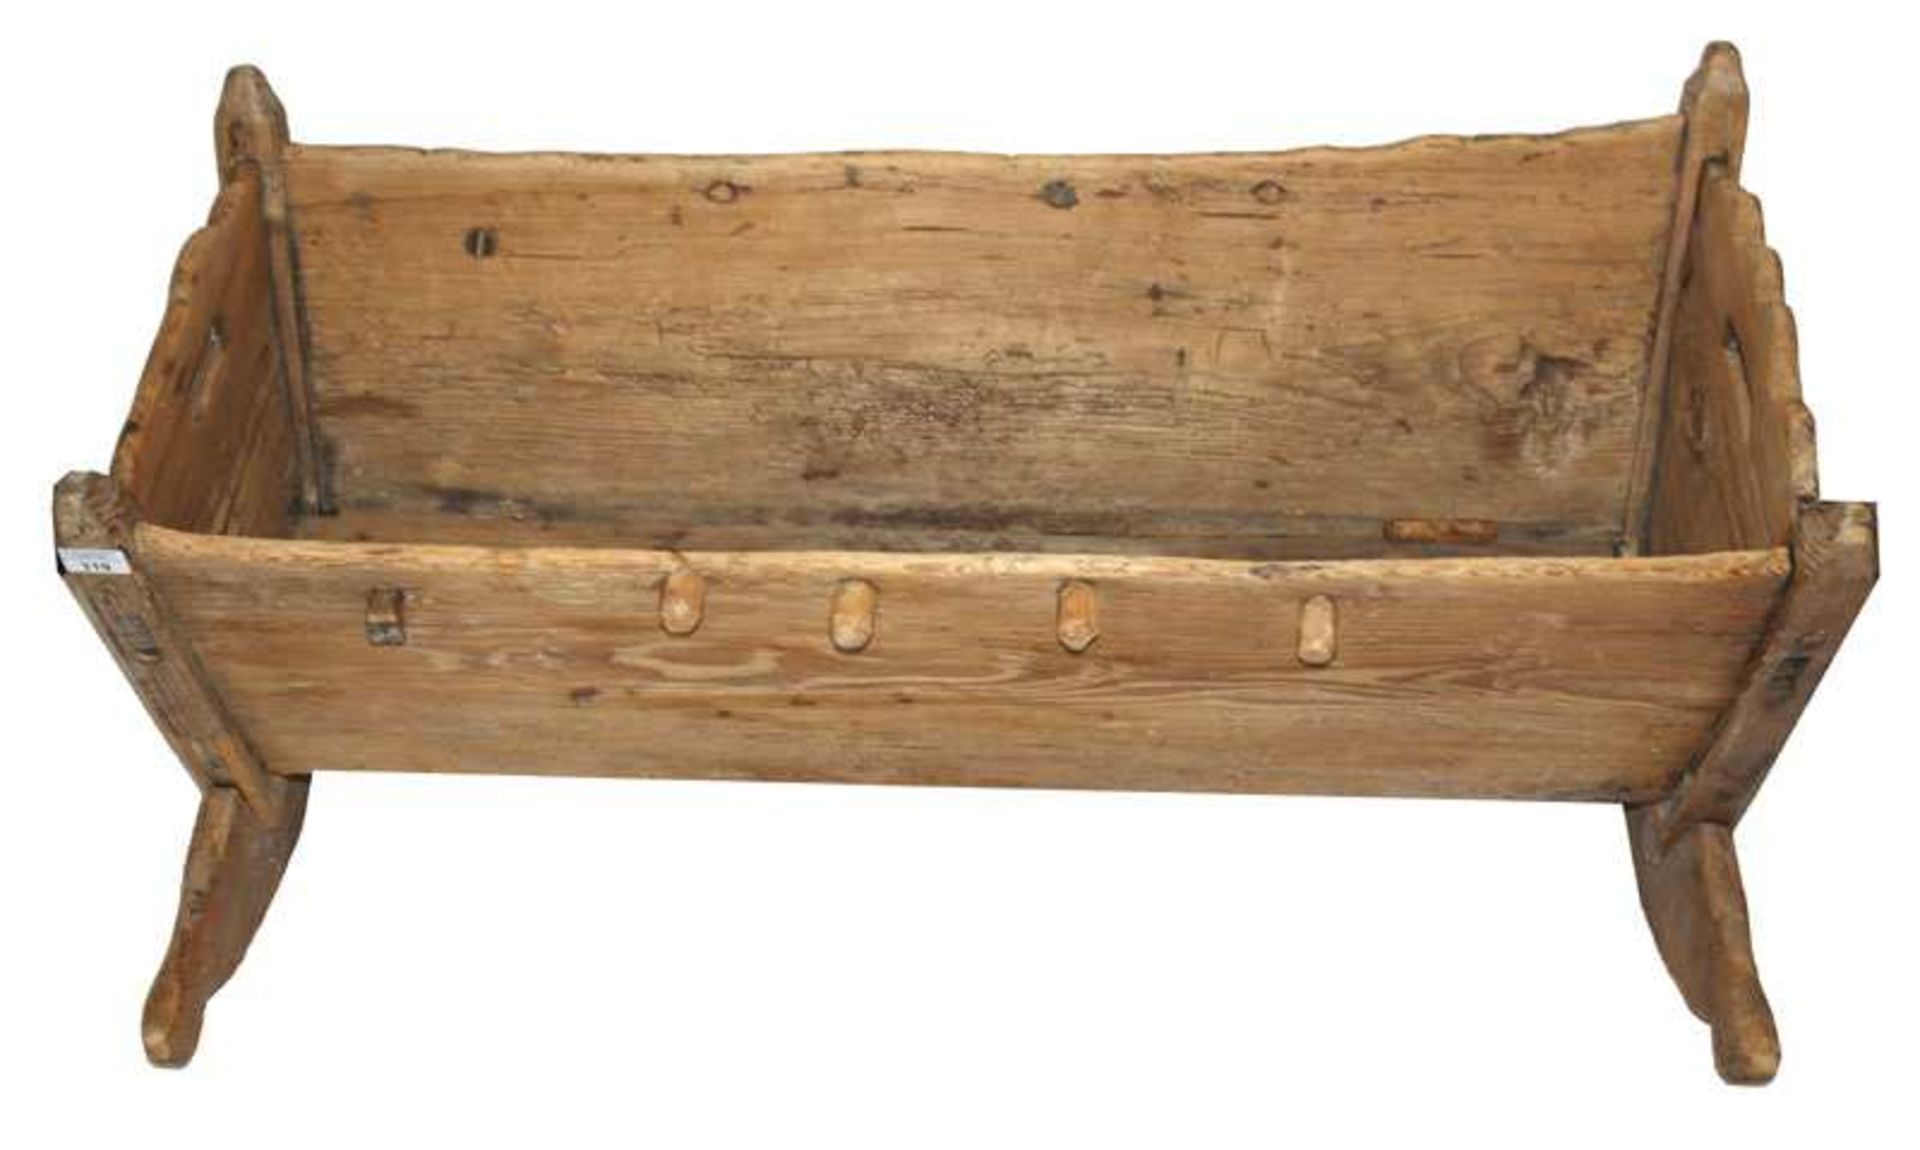 Babywiege, Nadelholz, 19. Jahrhundert, H 50 cm, L 103 cm, B 70 cm, Alters- und Gebrauchsspuren